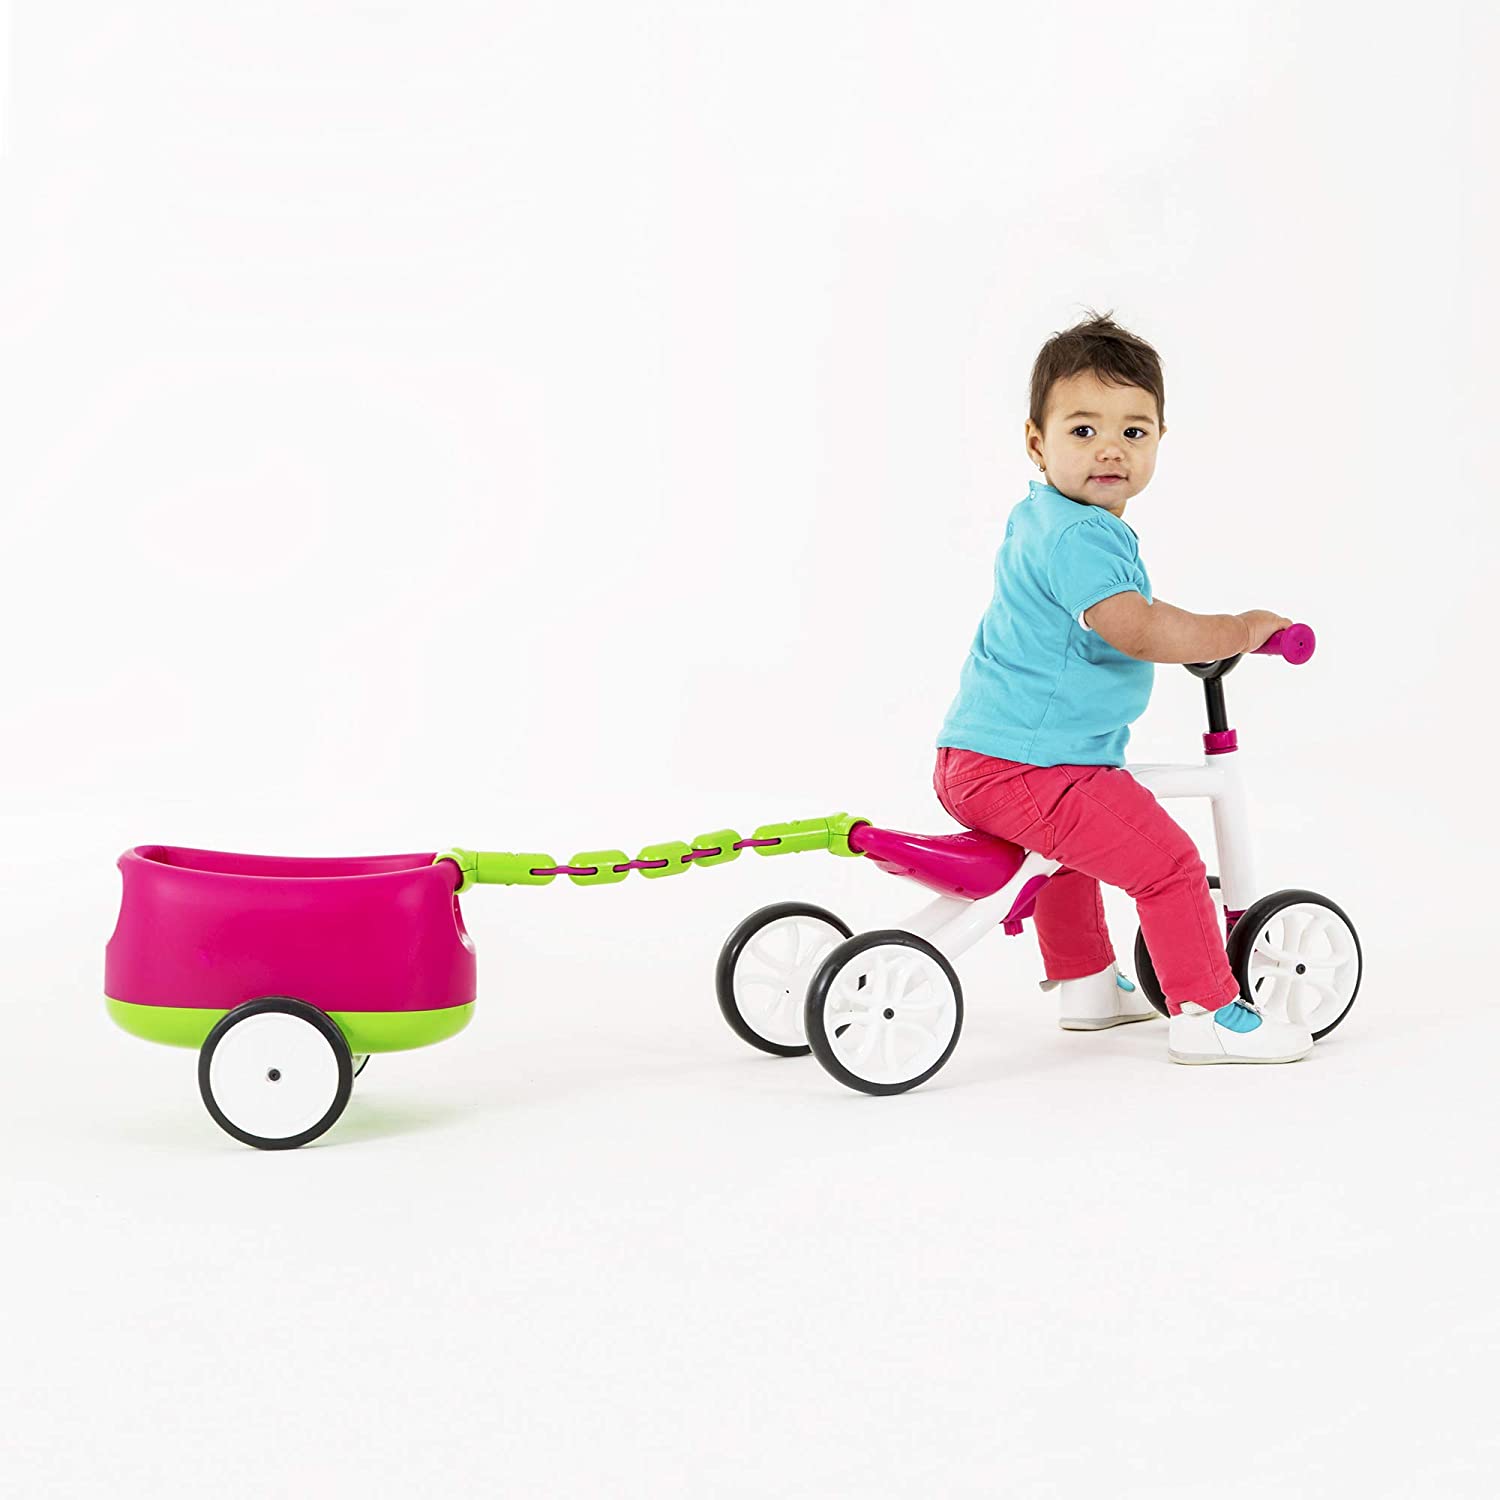 Bicicletă roz cu 4 roți, fără pedale, reglabilă pe înălțime și remorcă detașabilă – Quadie Trailie edituradiana.ro imagine 2022